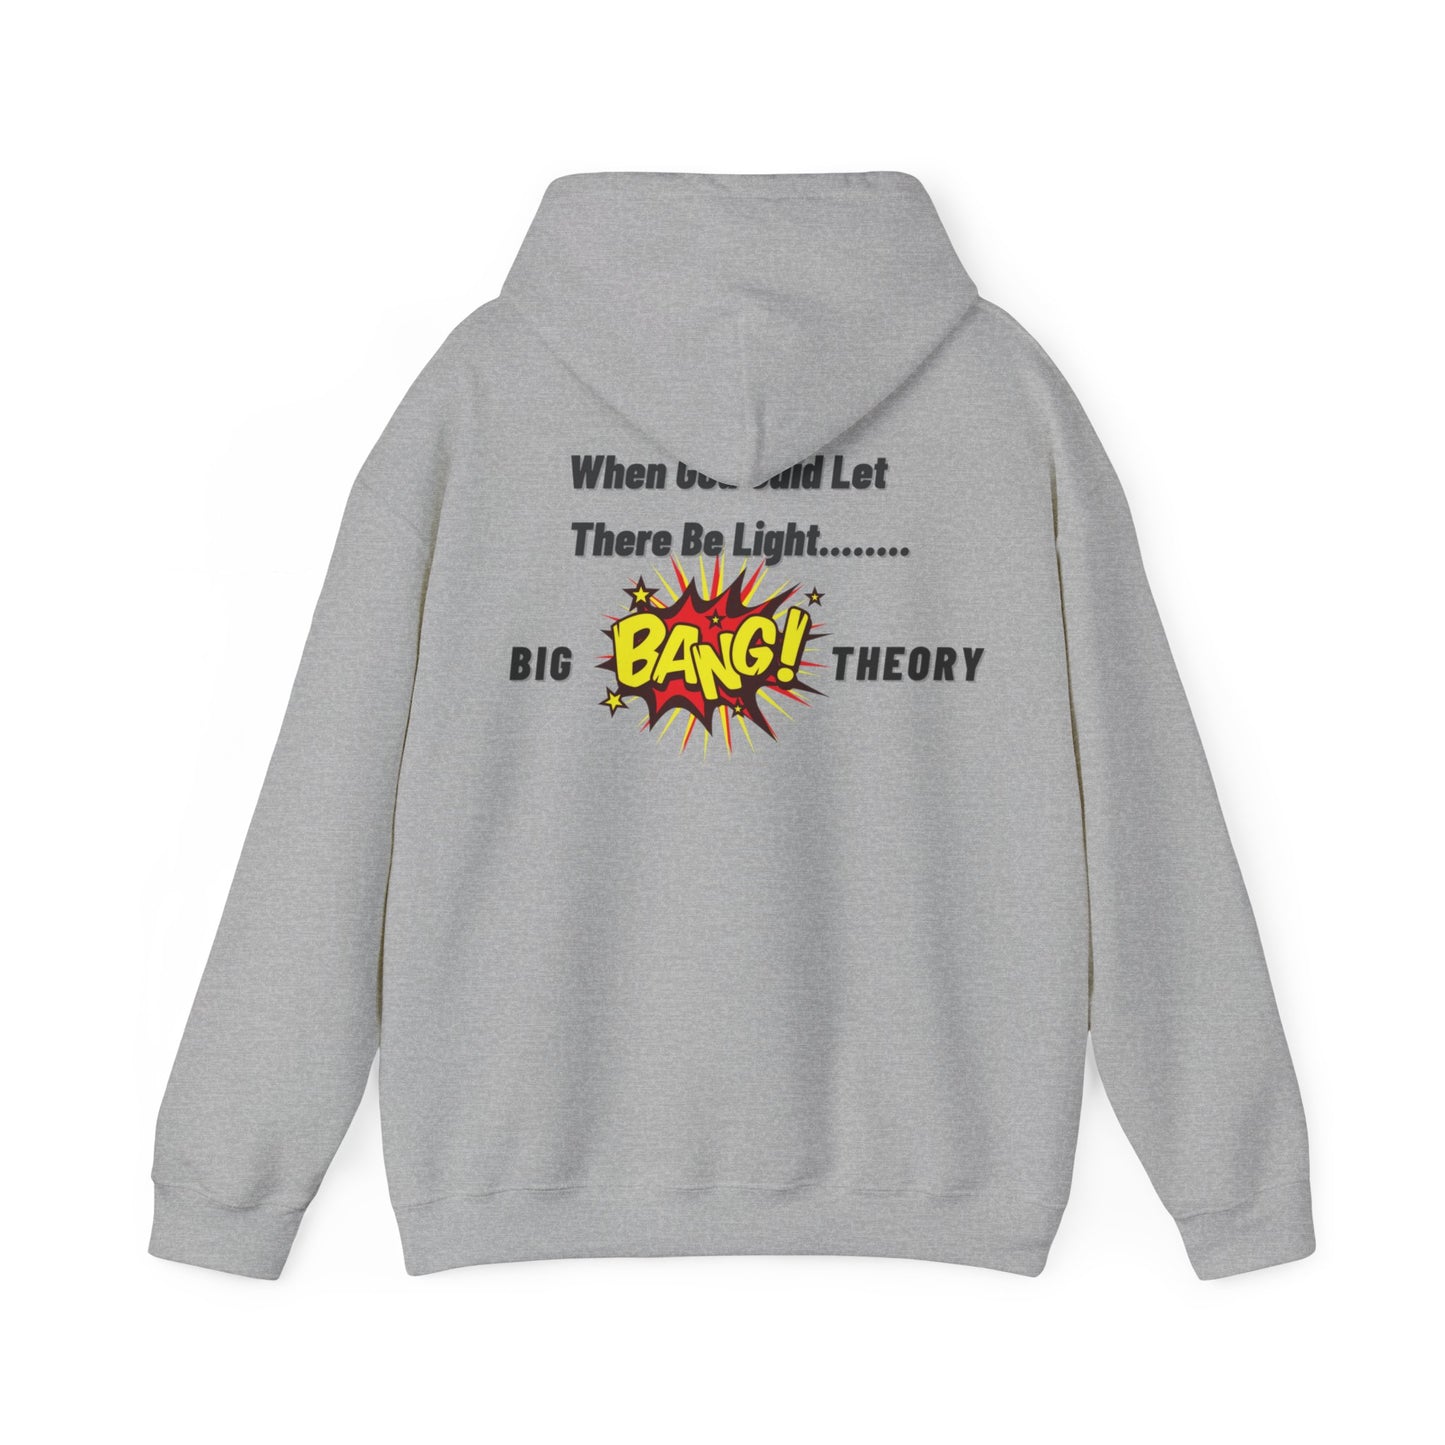 Ableiva - Big Bang Theory - Unisex Hooded Sweatshirt